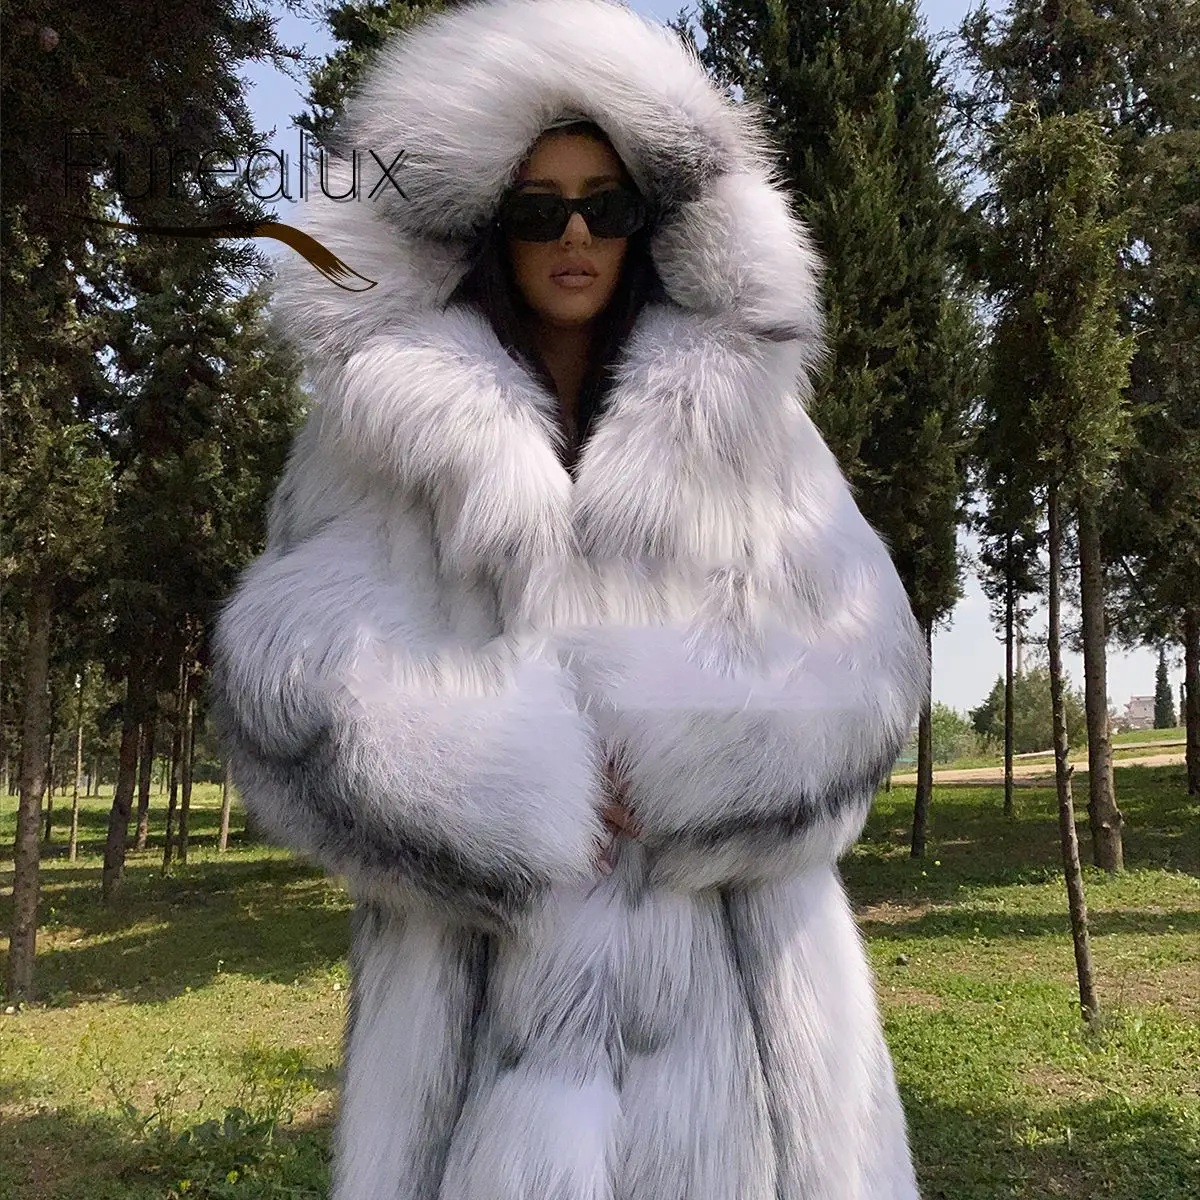 Best of Fur coat fetish